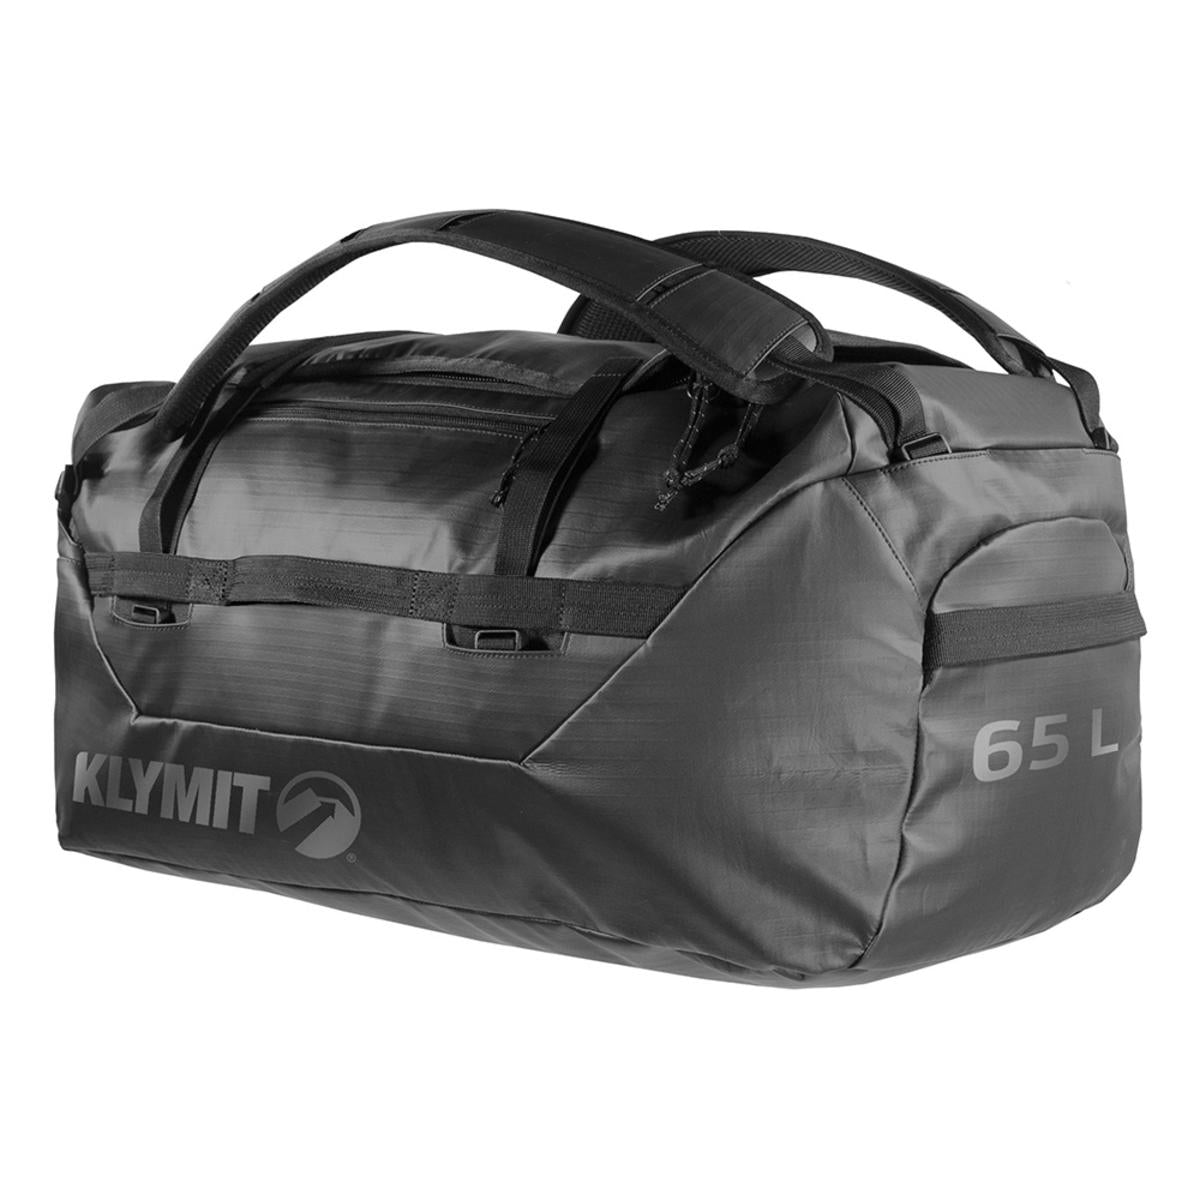 Klymit Gear Duffel 65L Bag - Black